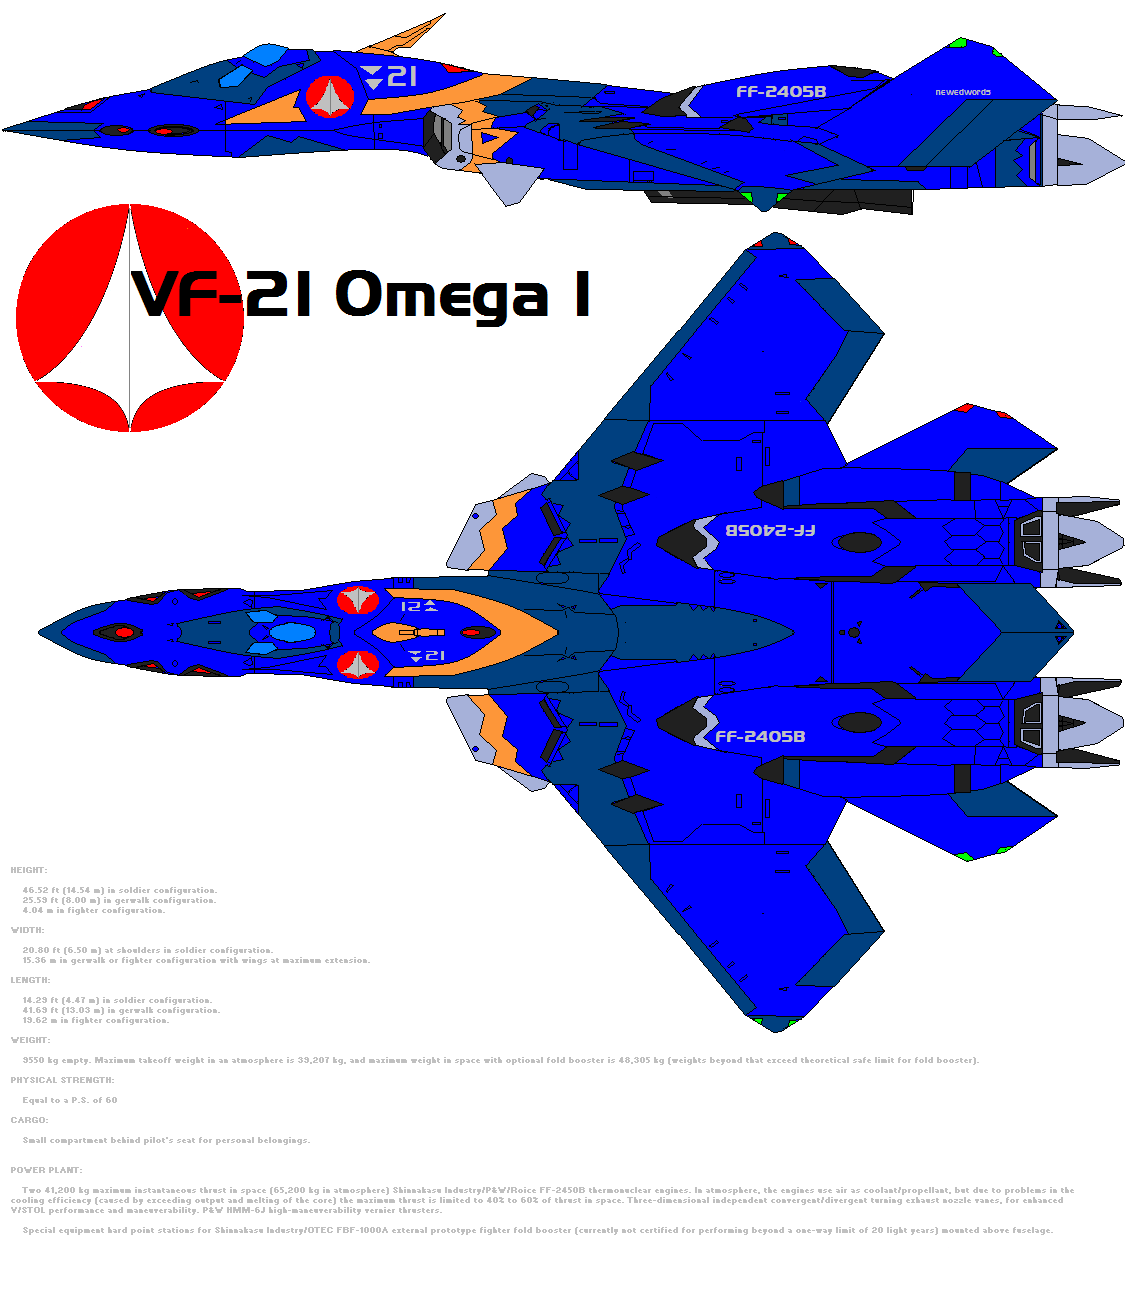 VF-21 Omega 1